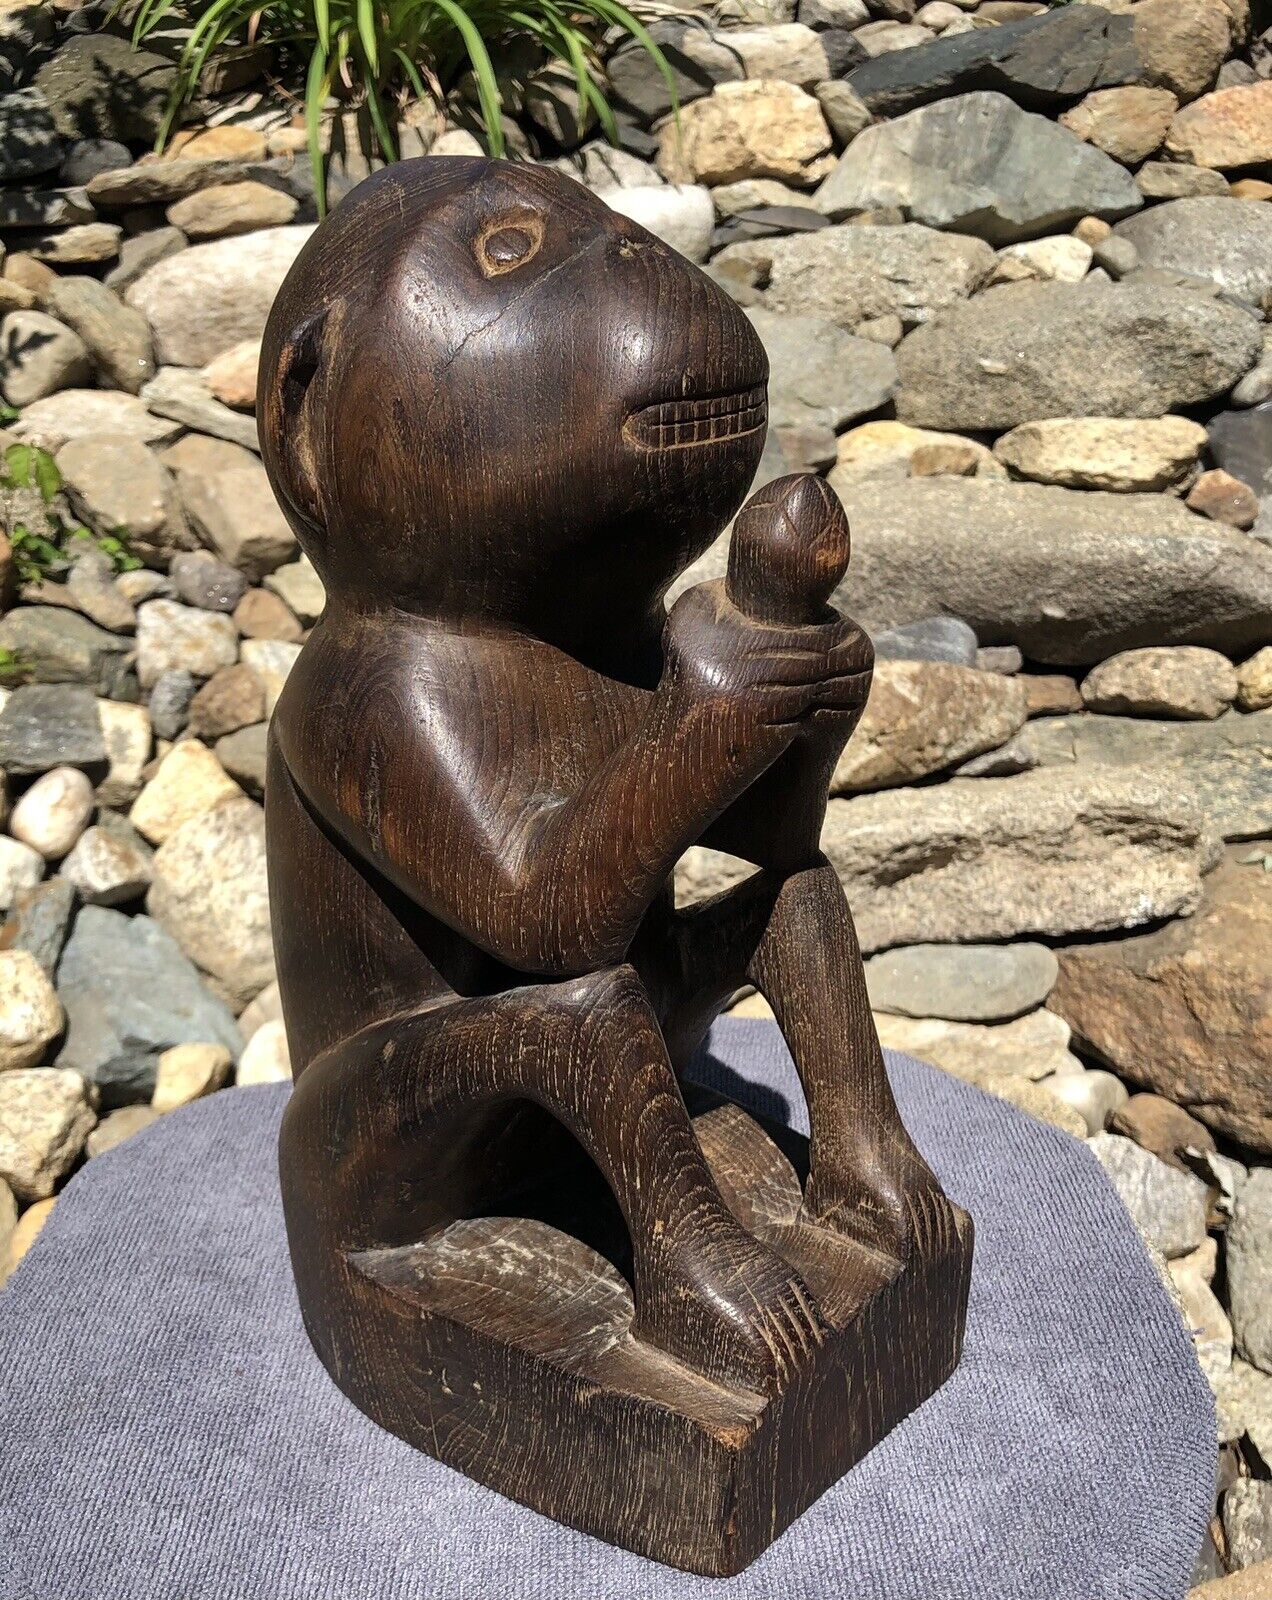 Antique Primitive Hand Carved Solid Wood Monkey & Nut Folk Art Sculpture Statue